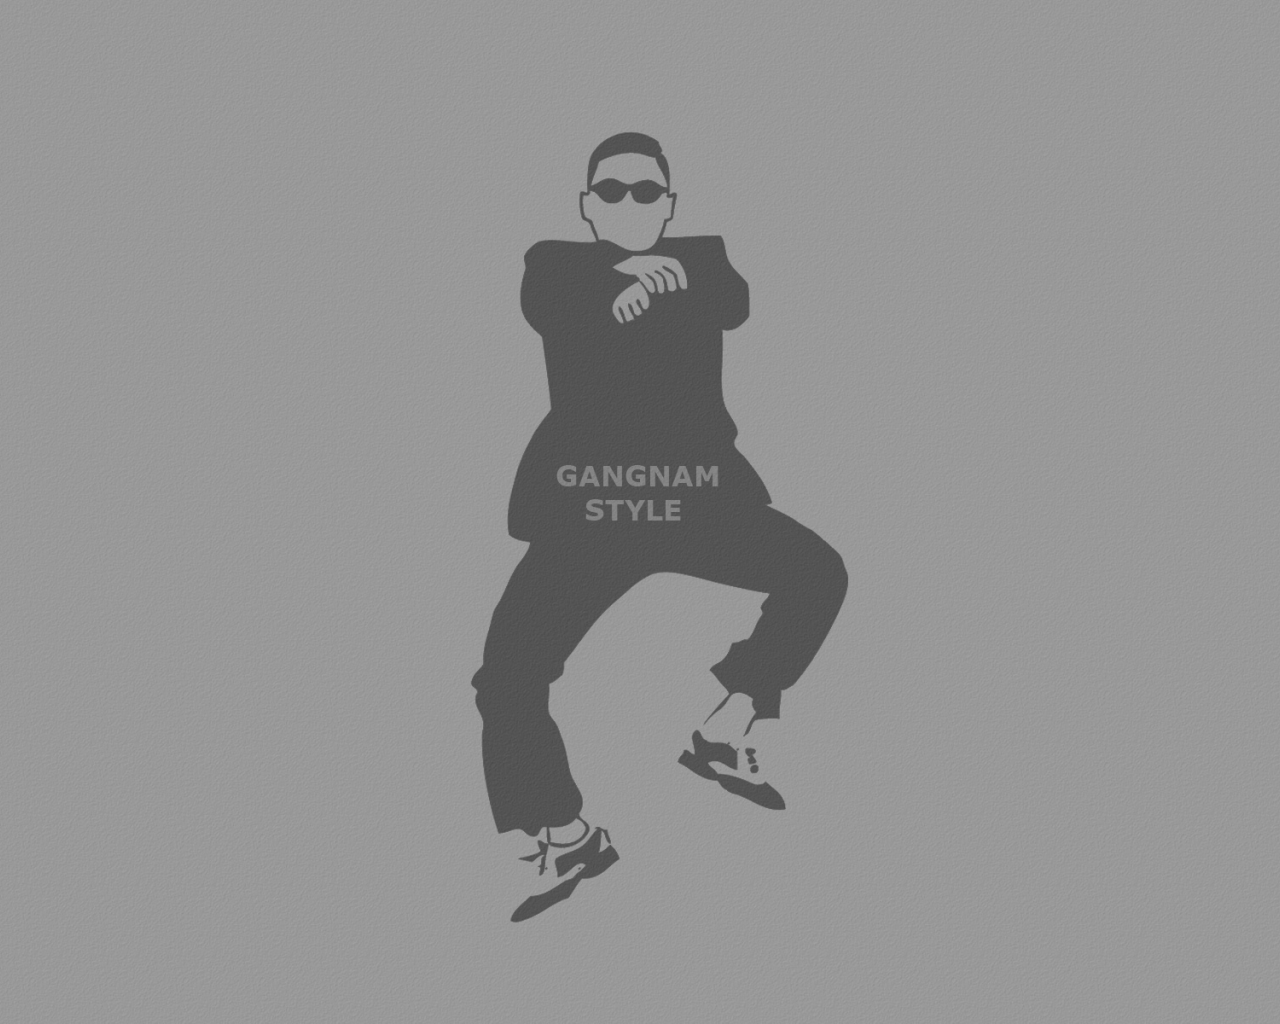 серый фон, танец, Gangnam style, надпись, очки, человек, psy